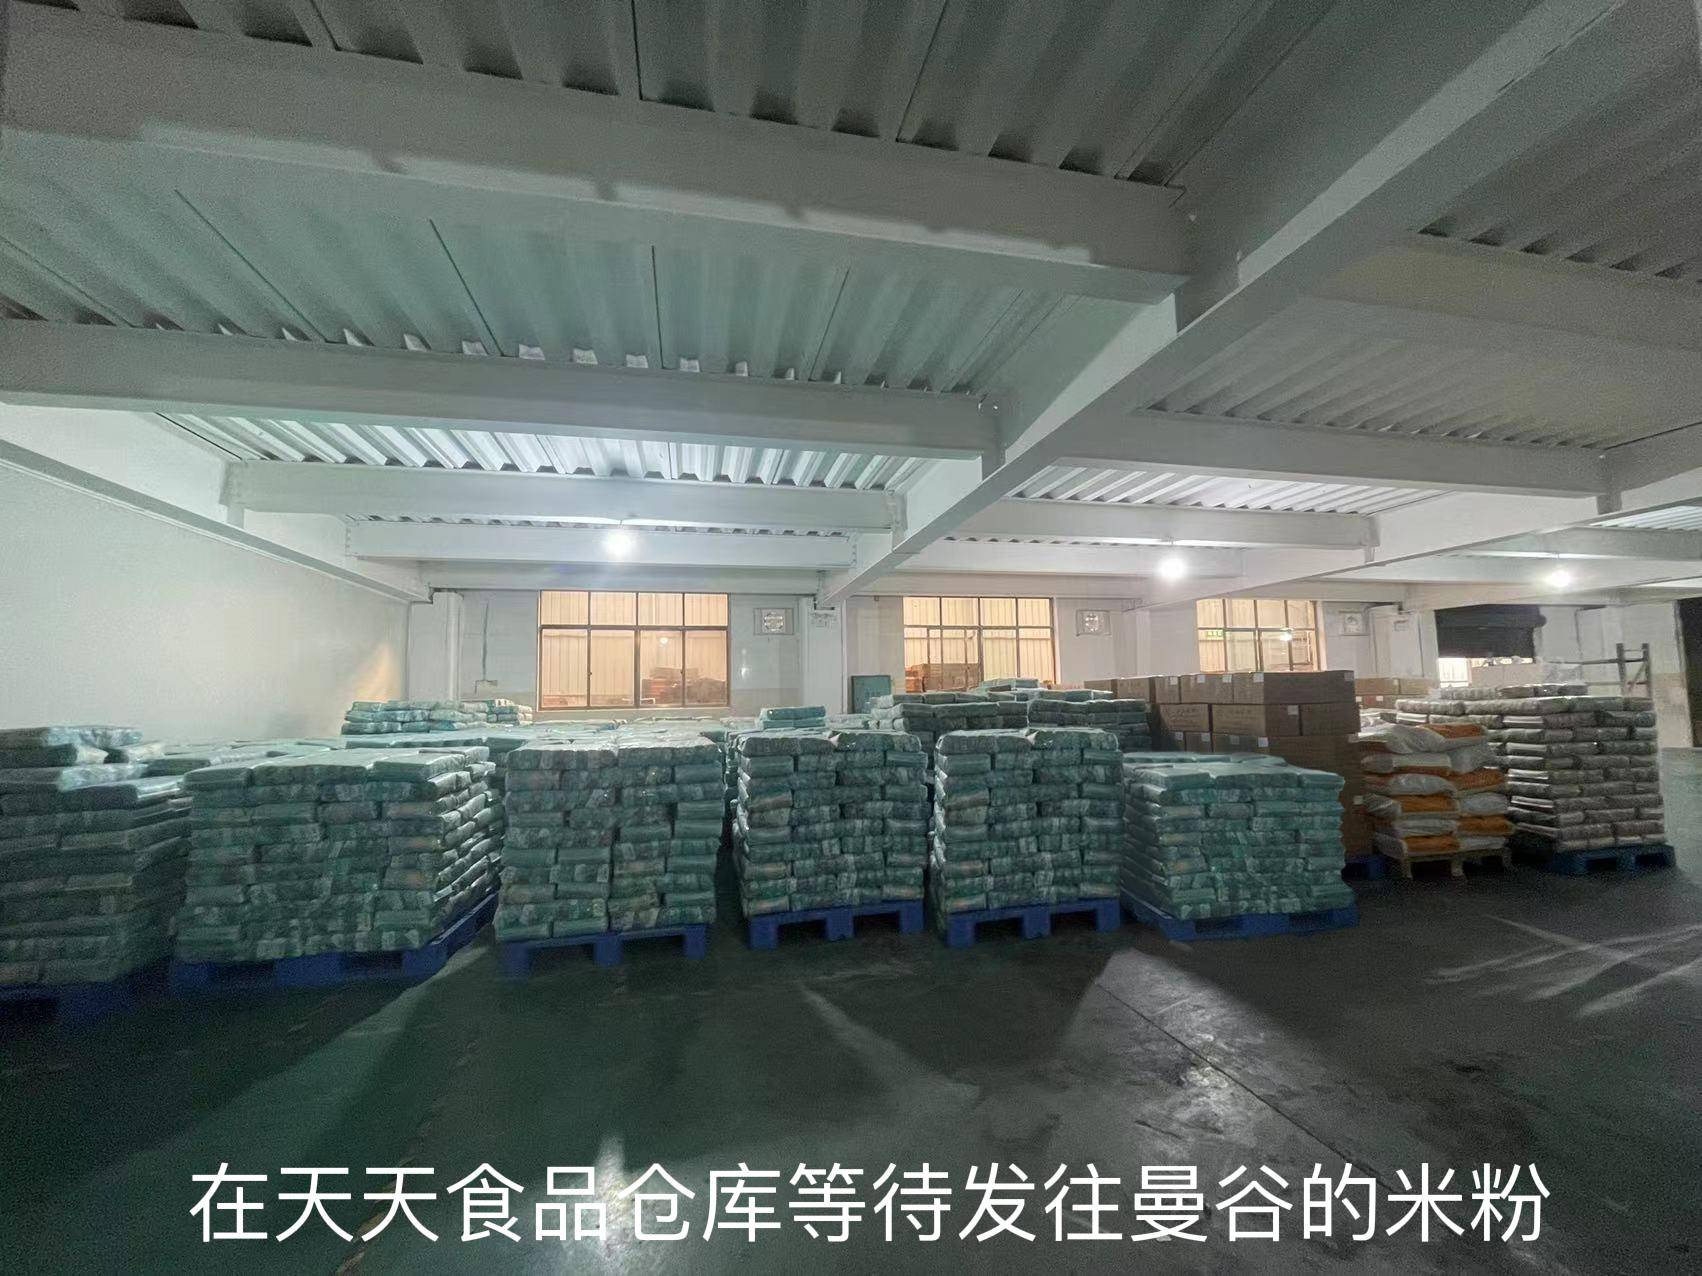 400吨的米粉东盟专列从怀化首发